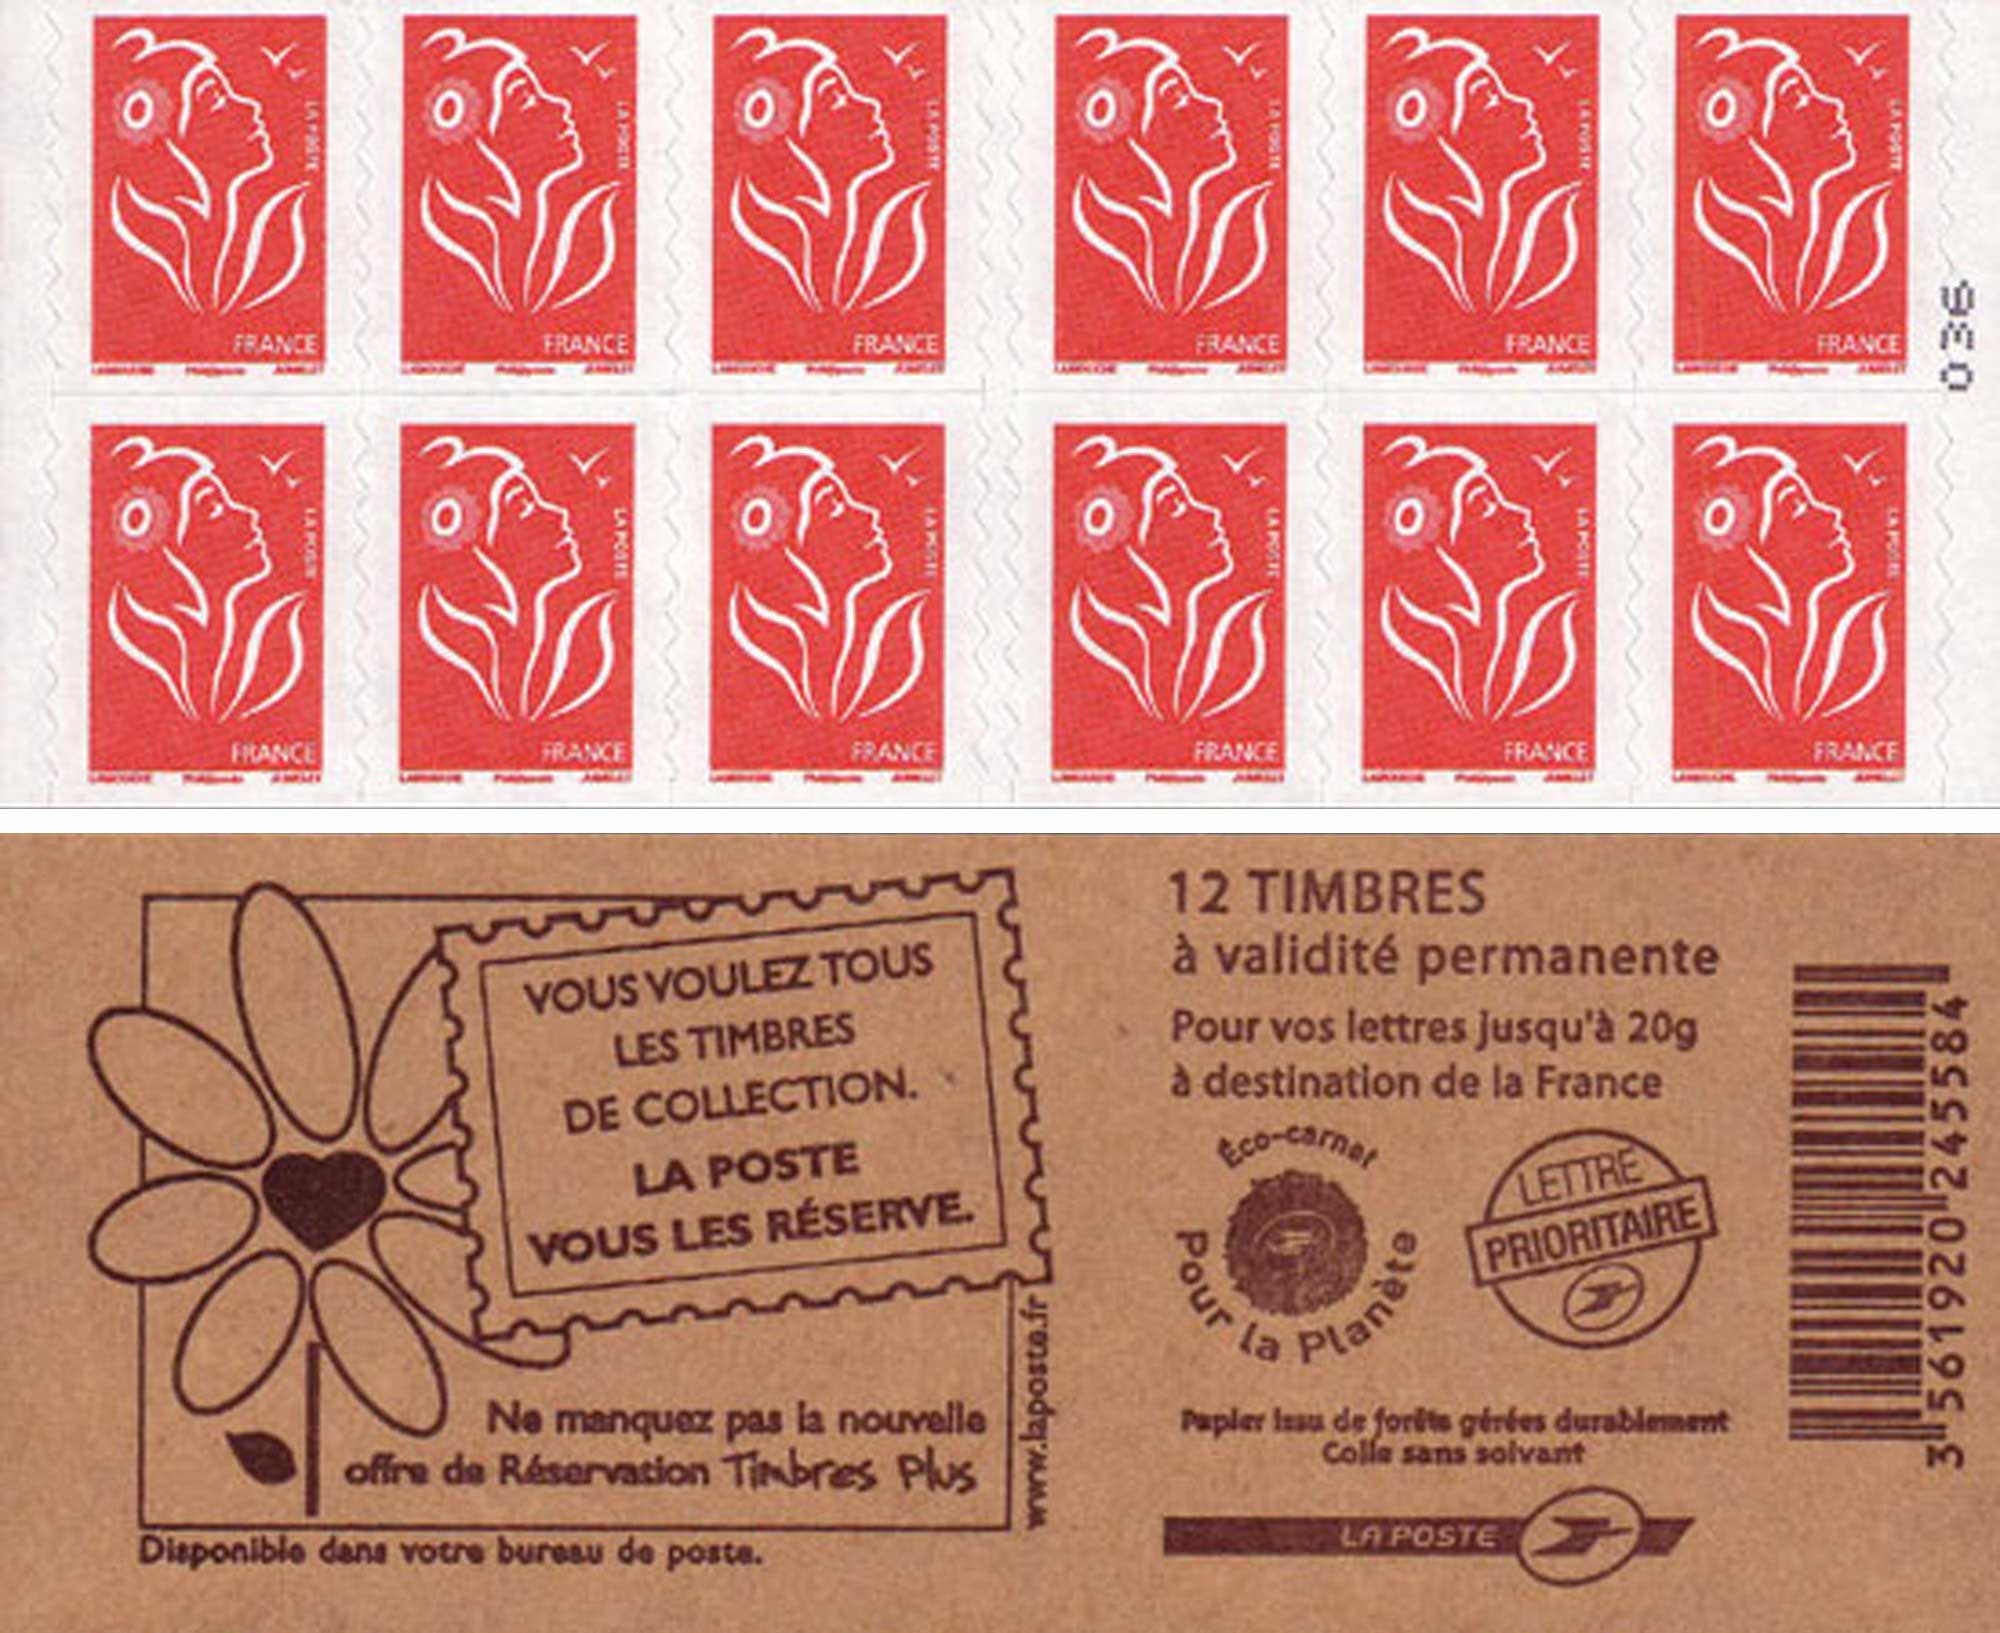 Vous voulez tous les timbres de collection La Poste vous les réserve